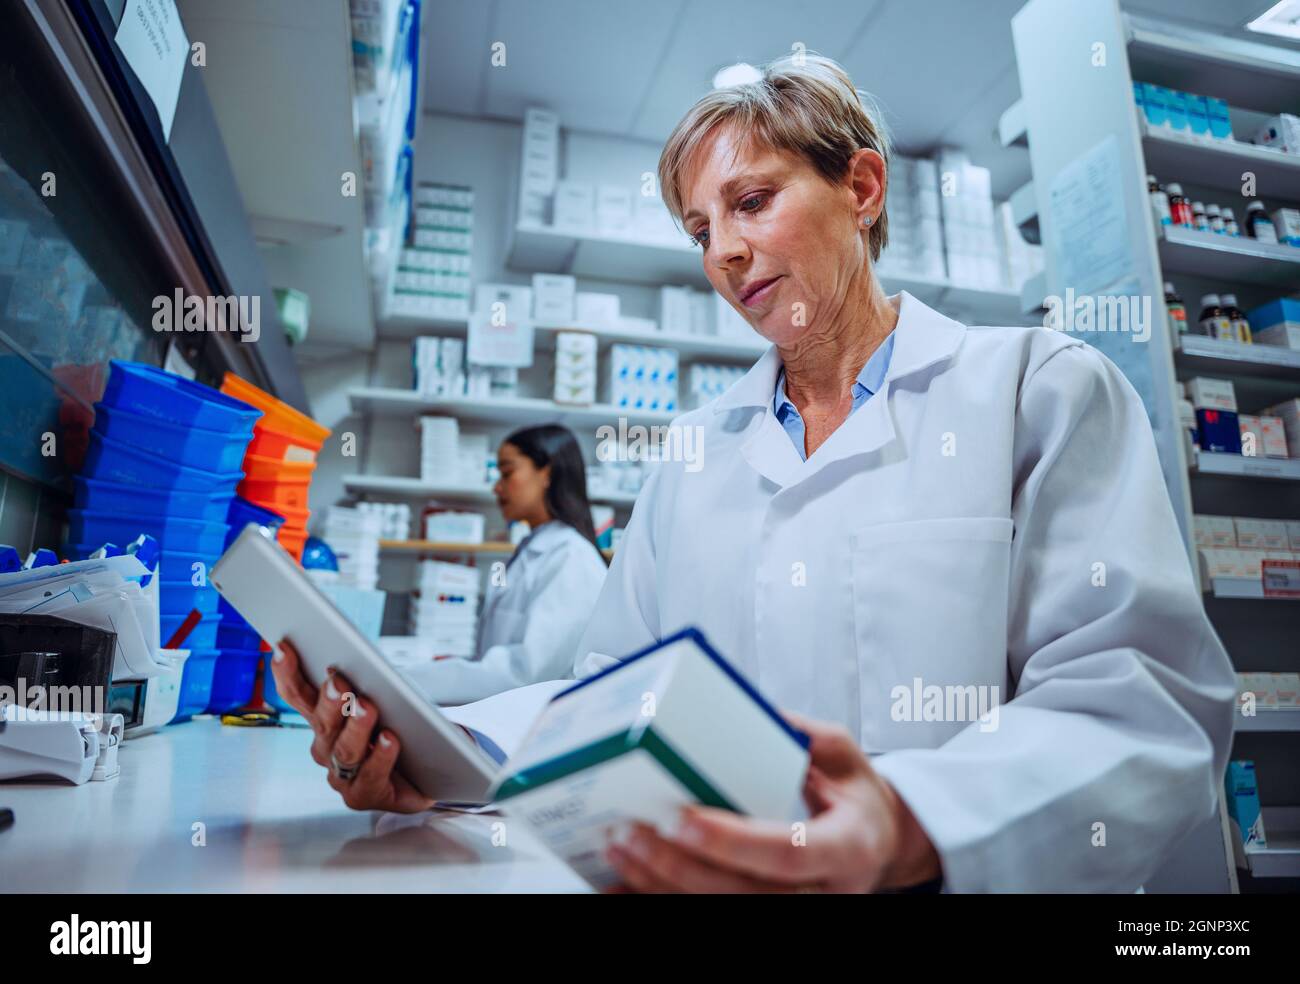 La pharmacienne caucasienne lit les étiquettes sur la boîte de médicaments d'ordonnance qui se trouve dans la pharmacie Banque D'Images